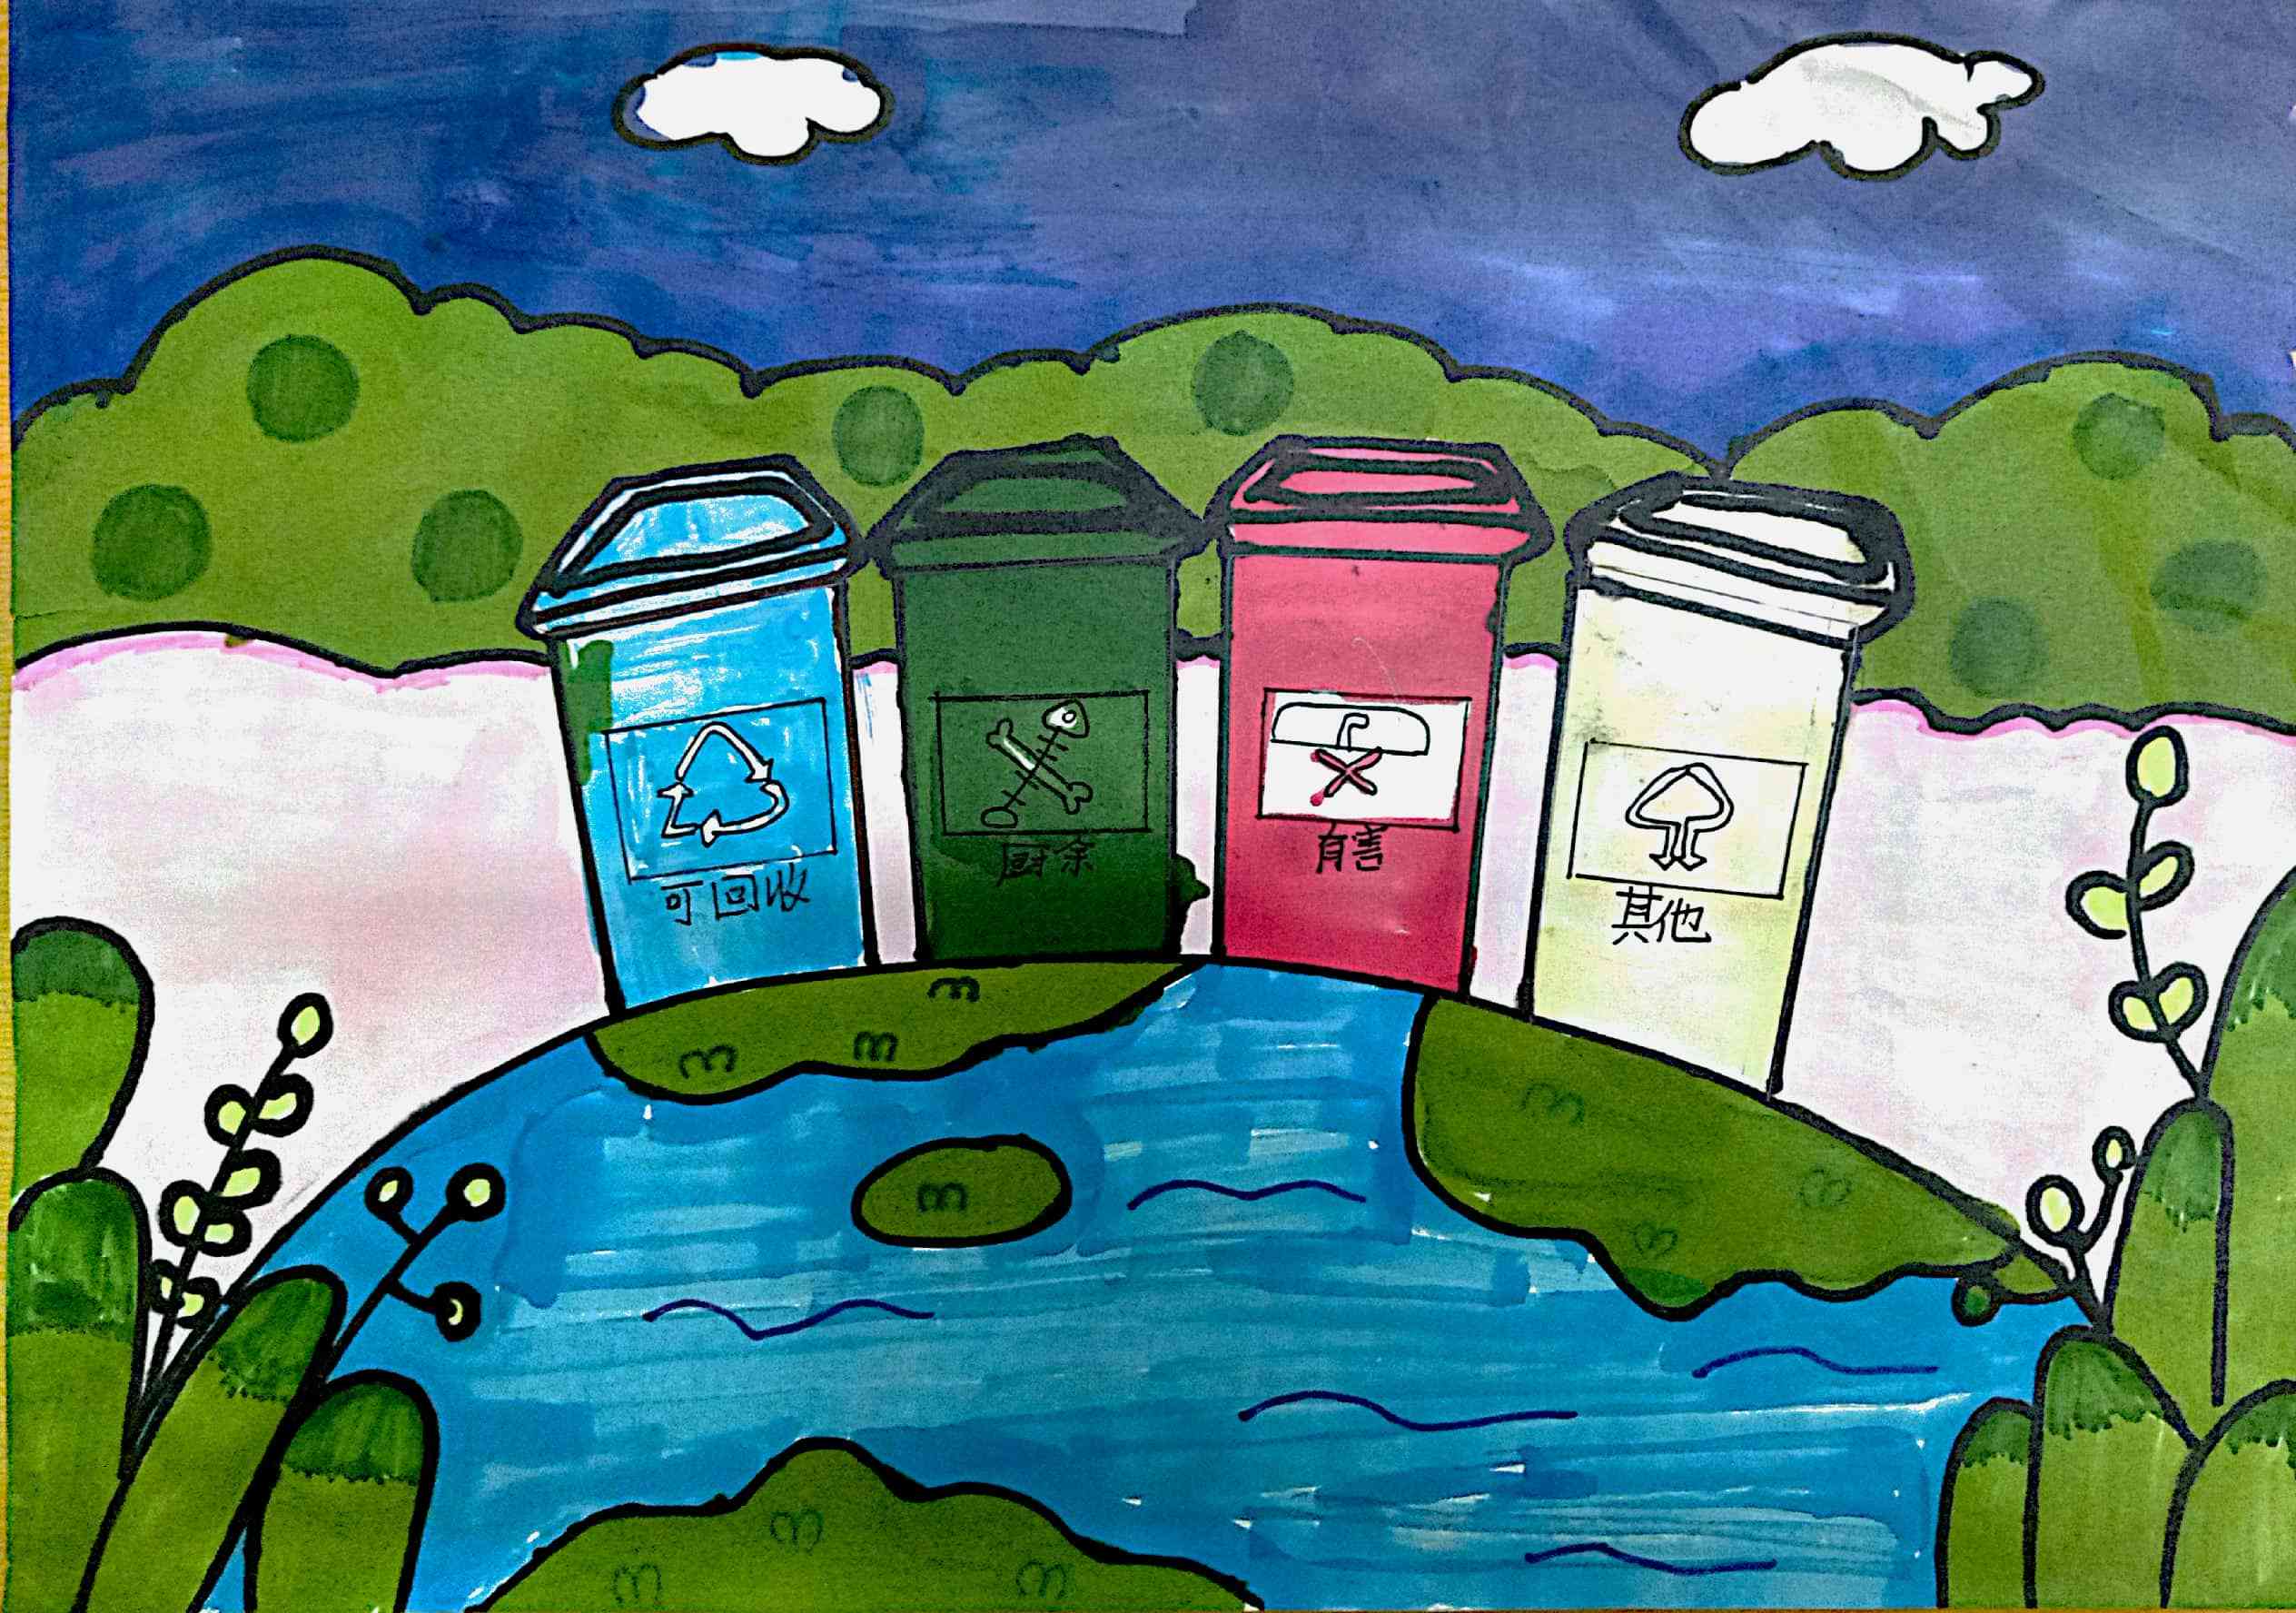 苏州垃圾分类主题绘画倡导绿色环保理念